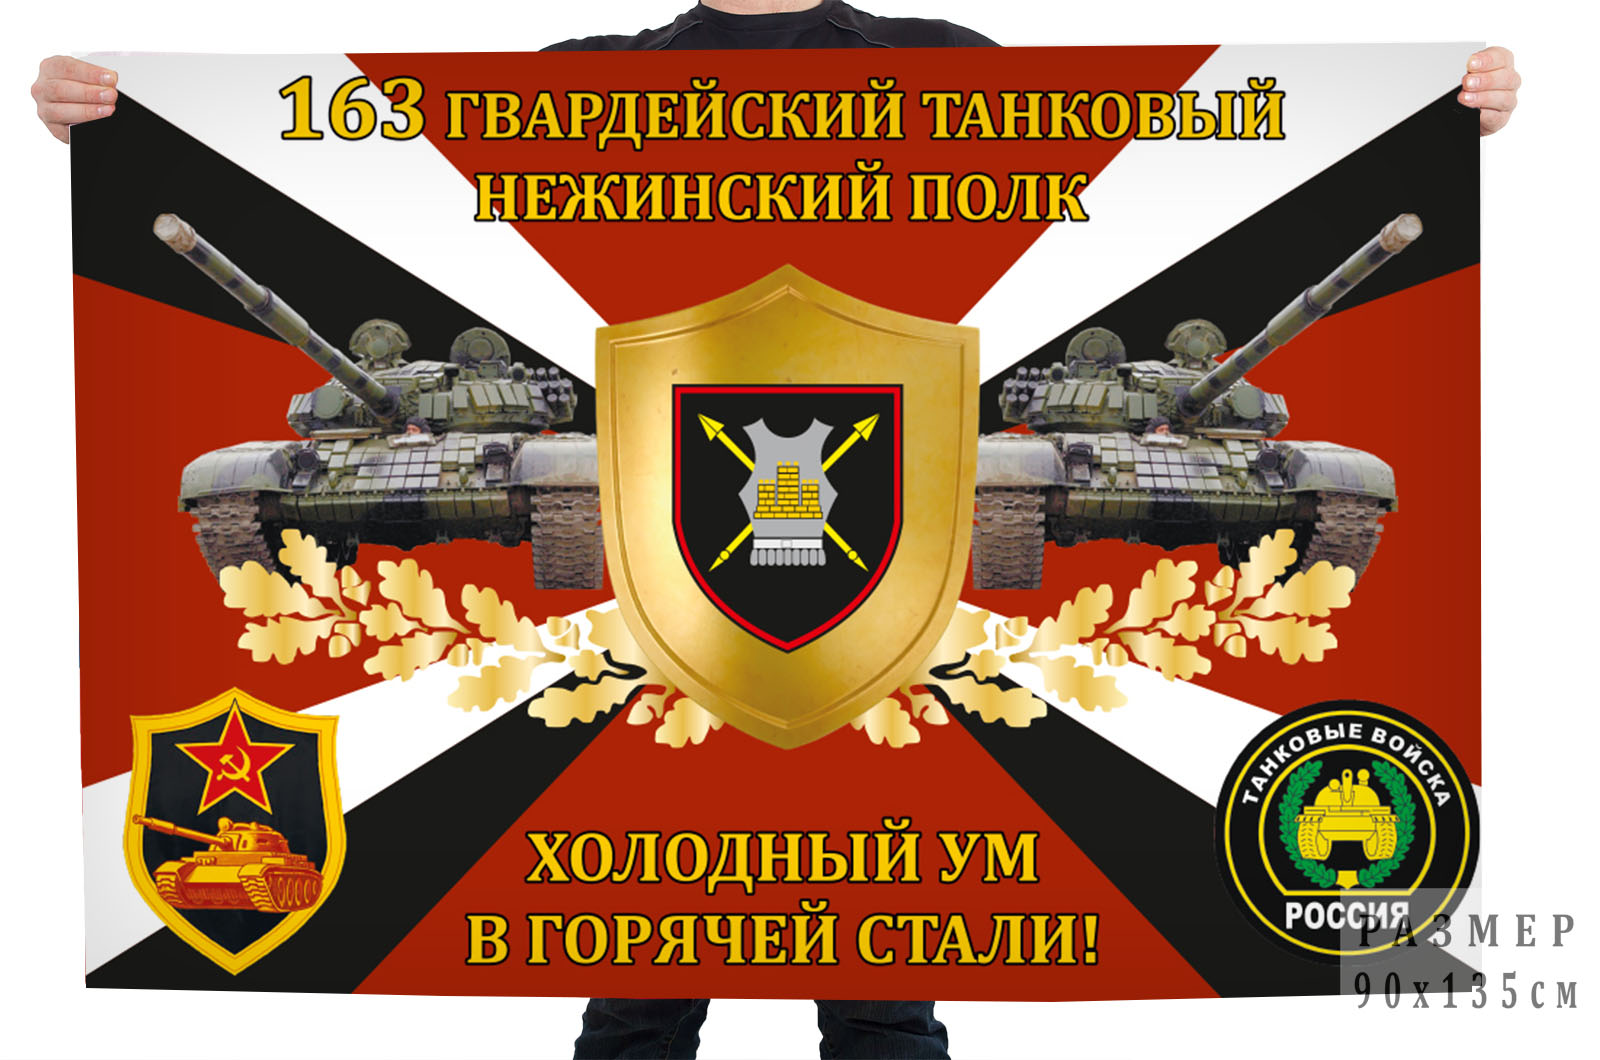 Флаг 163-го гвардейского танкового Нежинского полка "Холодный ум в горячей стали!"